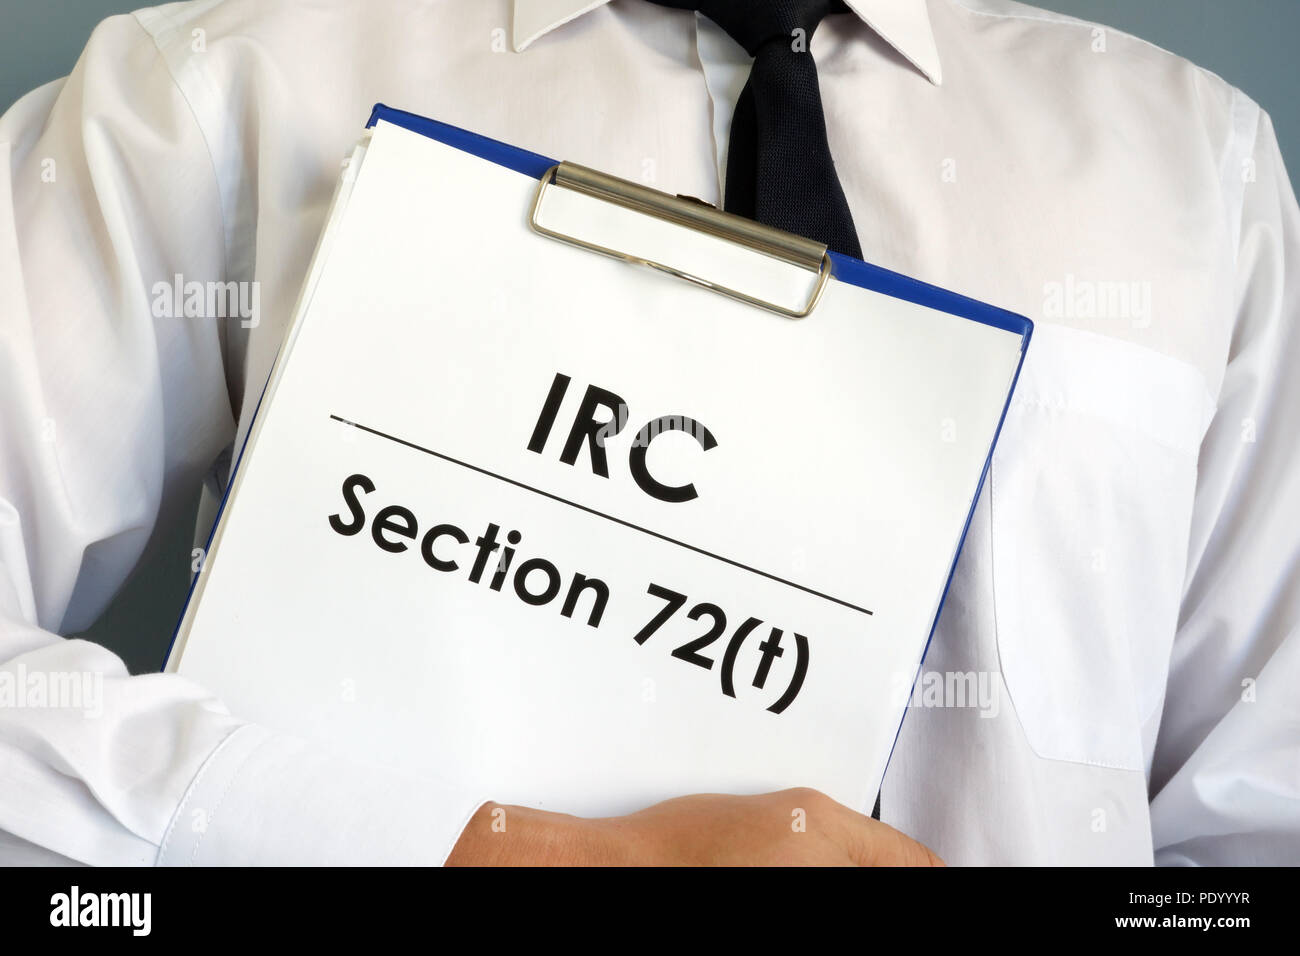 Manager è in possesso di IRC sezione 72(t) dei documenti. Foto Stock